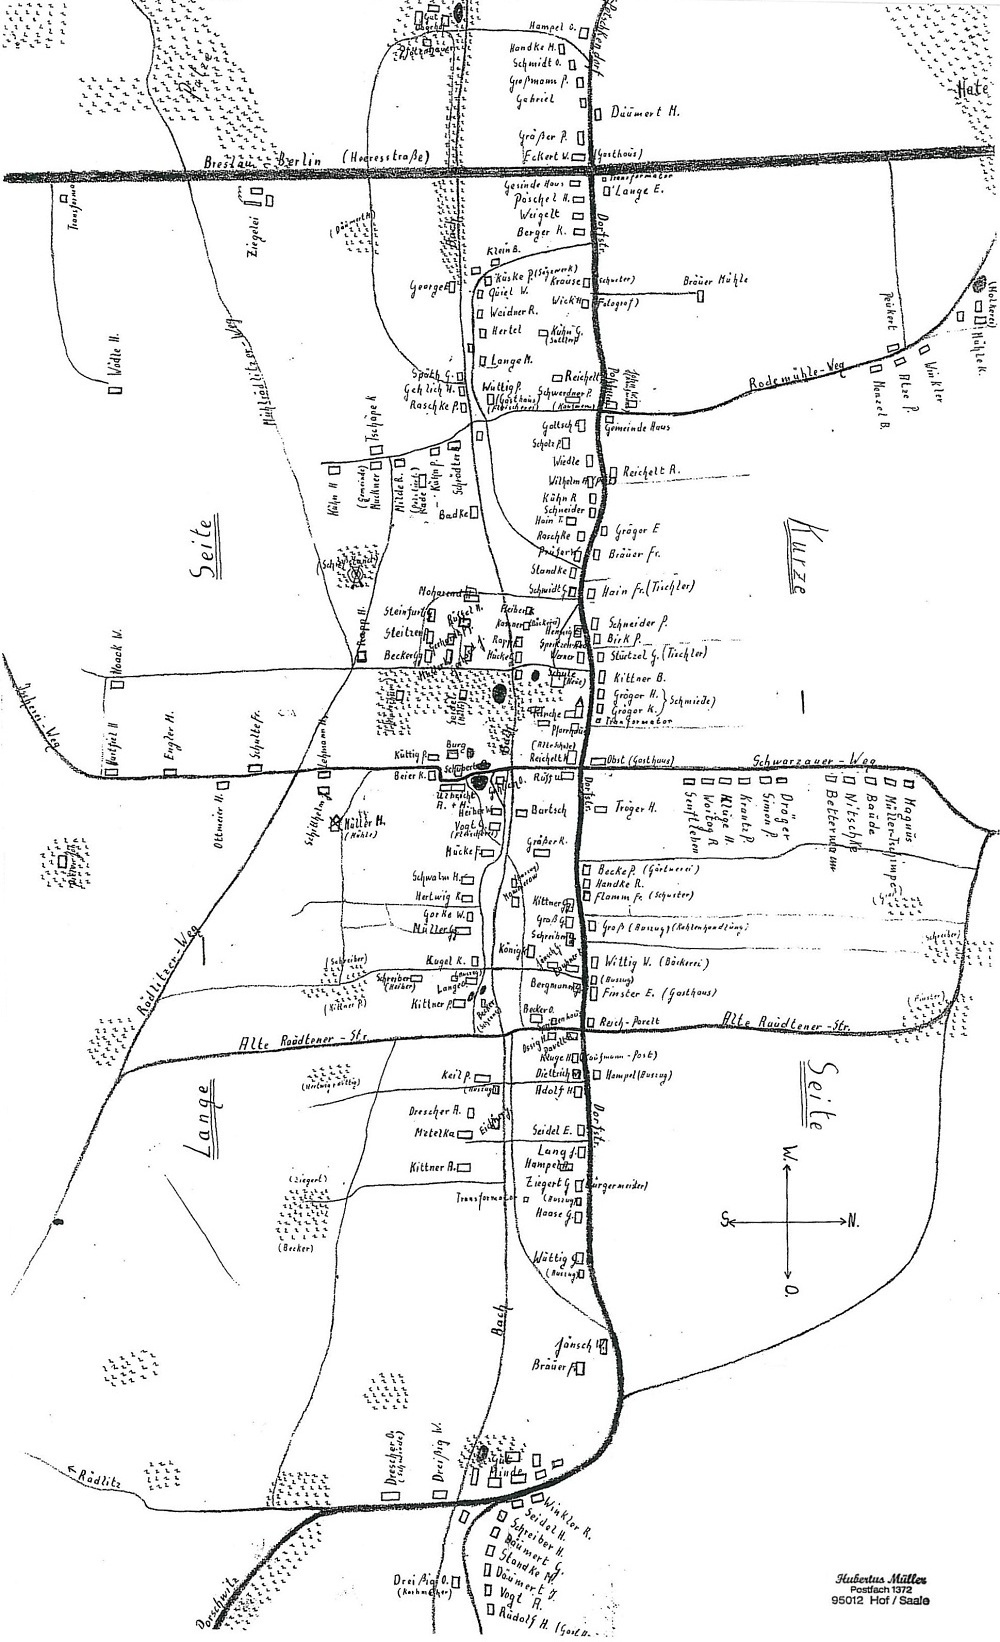 Dorfplan der Gemeinde Herzogswaldau / OT Dittersbach (1945)